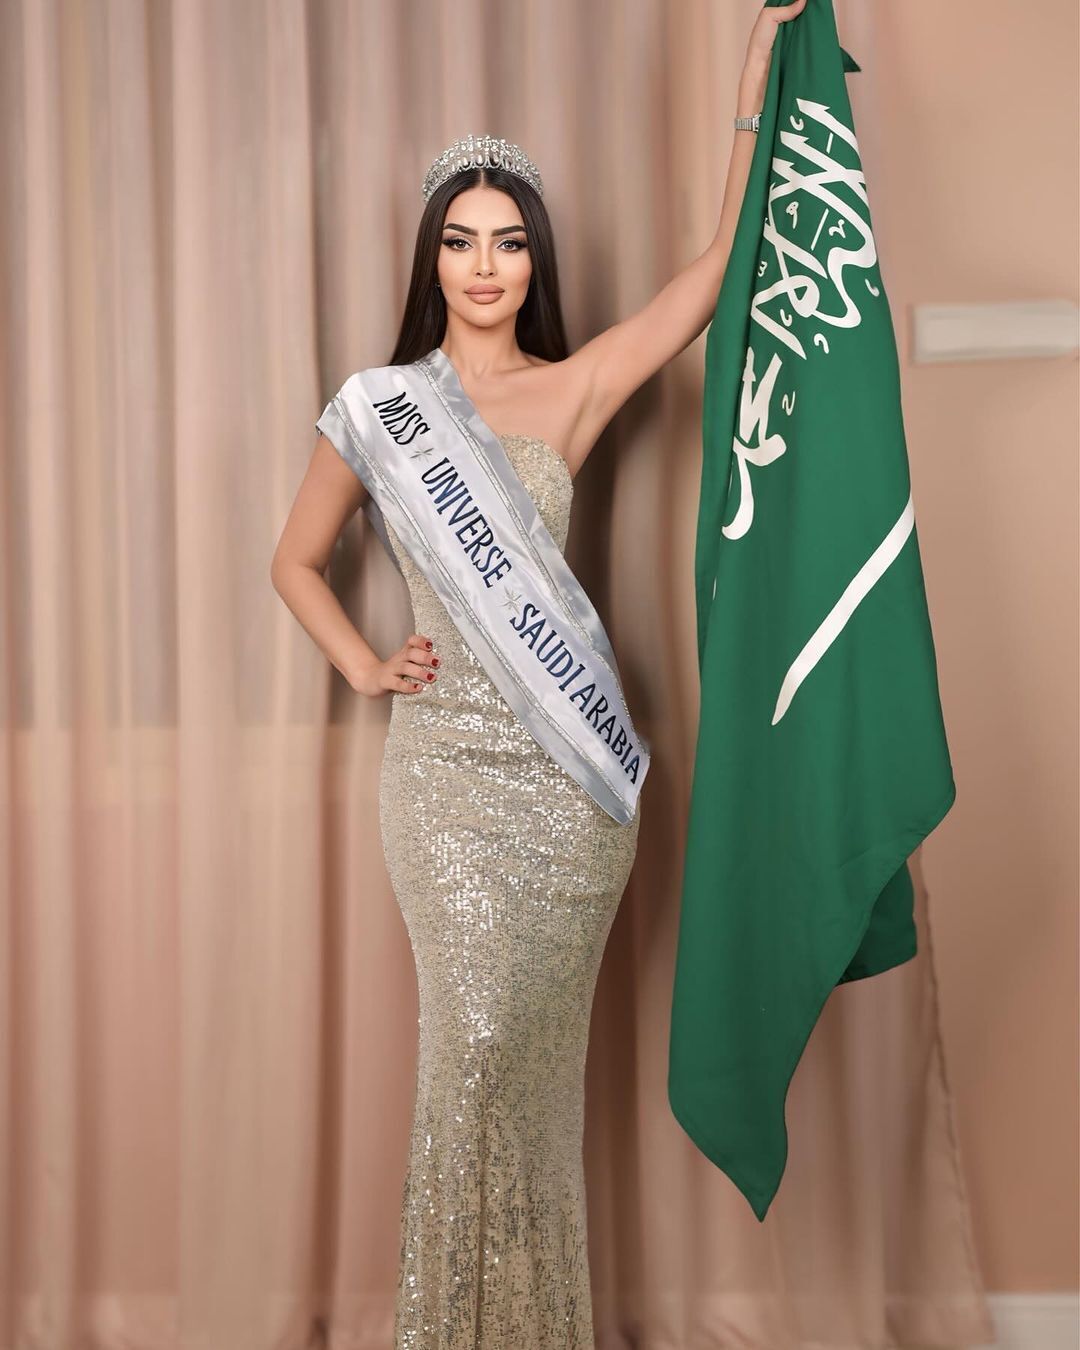 Саудівська Аравія вперше відправить учасницю на конкурс  qkxiqdxiqdeihrant